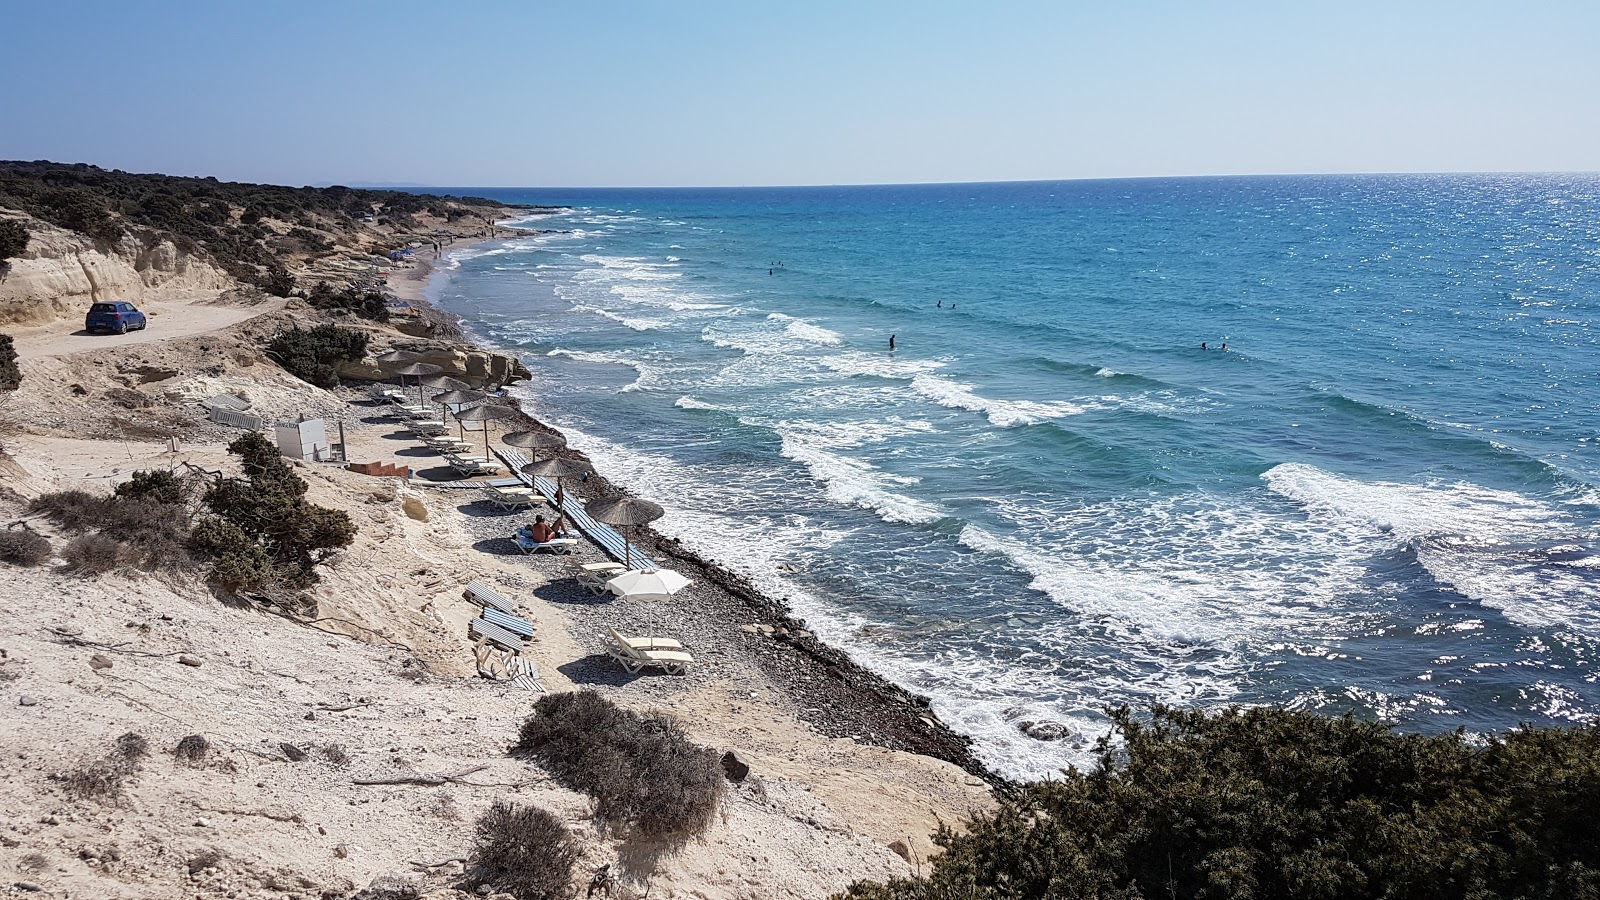 Agios Theologos beach'in fotoğrafı gri kum ve çakıl yüzey ile